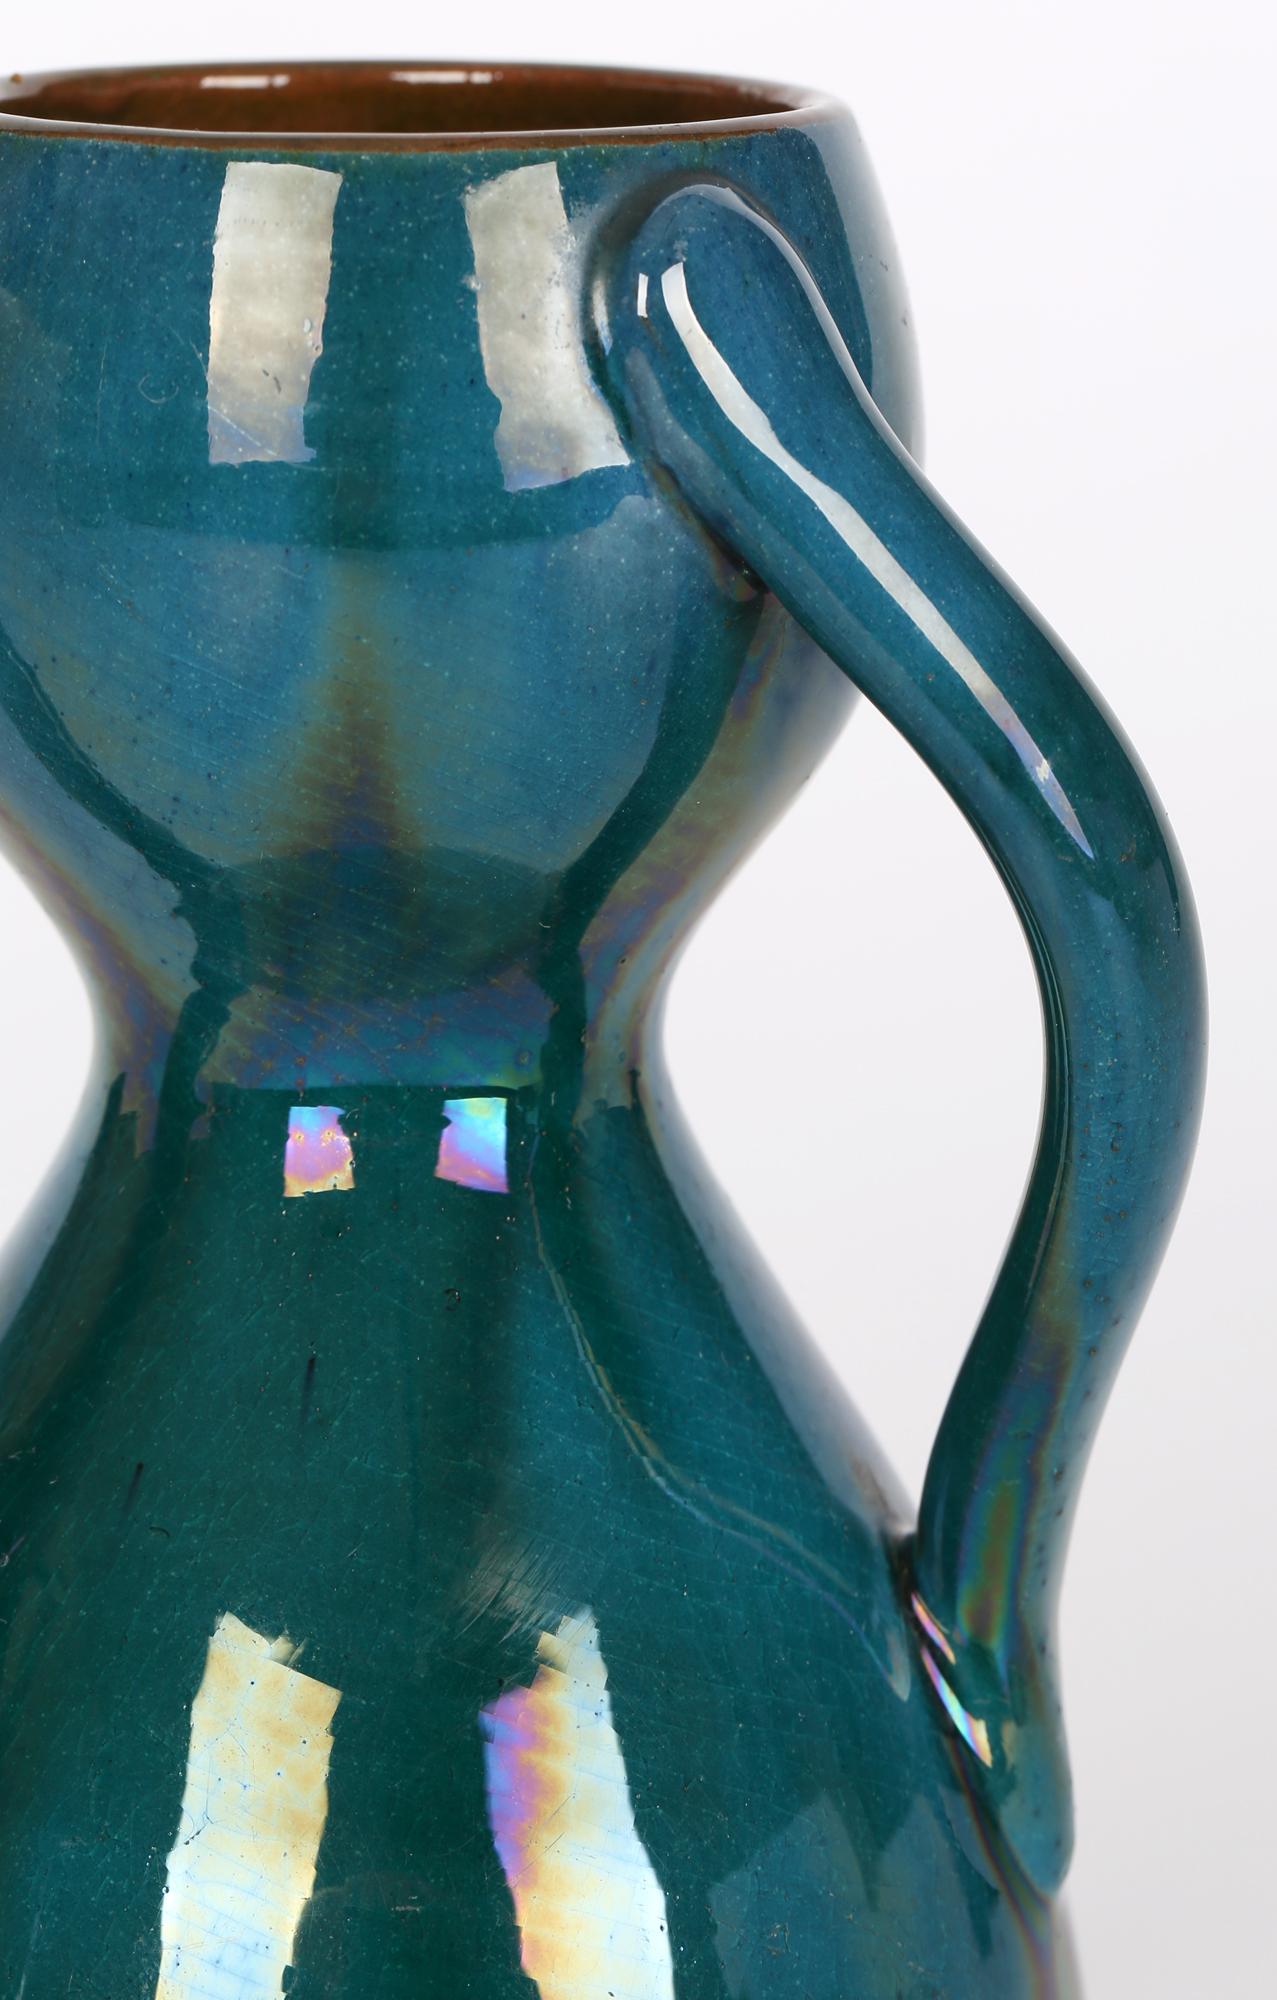 Eine atemberaubende Arts & Crafts Vase mit drei Henkeln in Form einer Sanduhr, die Linthorpe zugeschrieben wird und in der Art von Christopher Dresser (Brite, 1834 - 1904) aus der Zeit um 1880. Die Vase steht auf einem flachen glasierten Sockel und